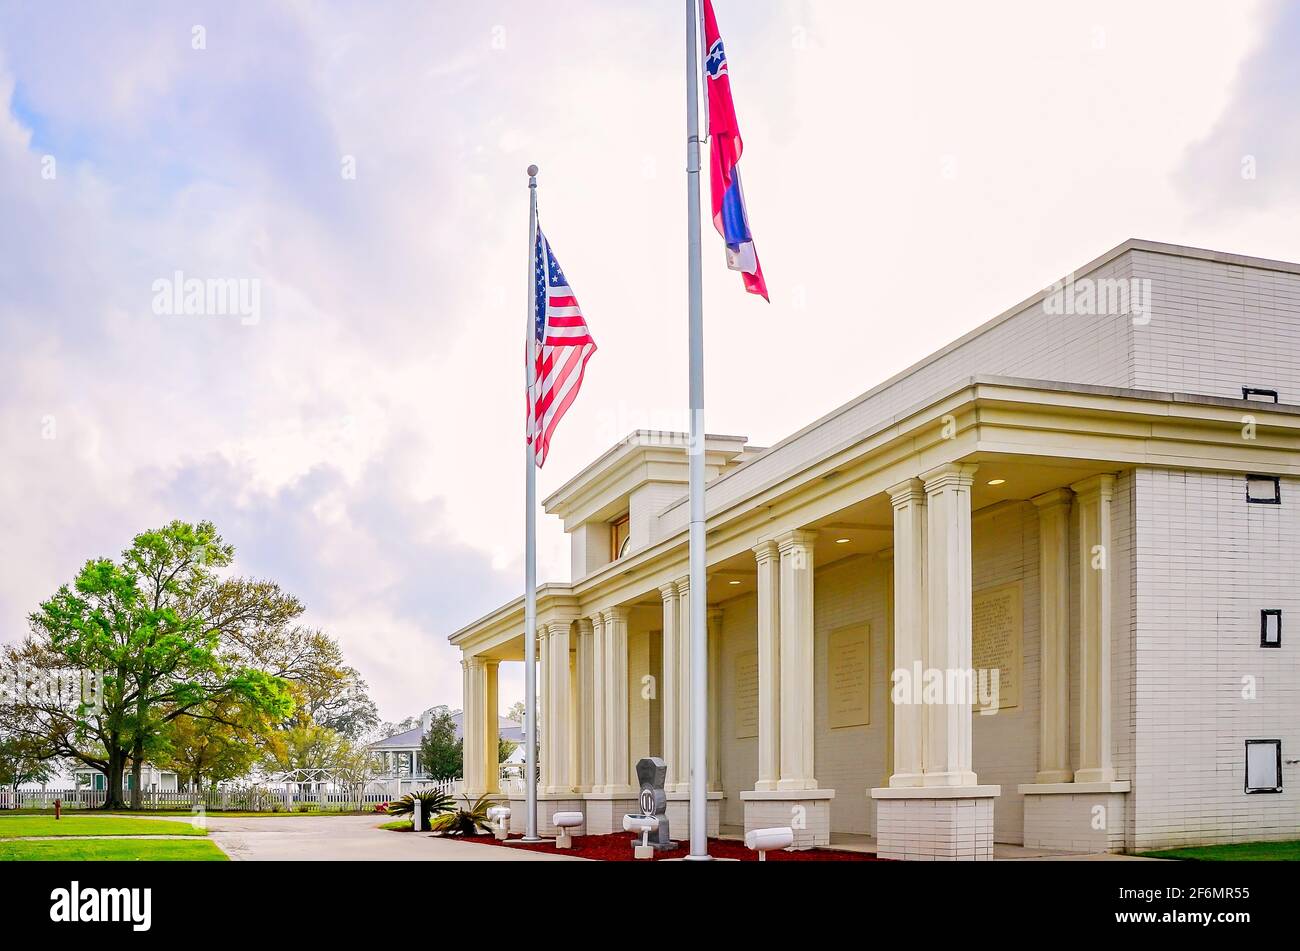 La Bibliothèque présidentielle et le musée Jefferson Davis sont photographiés, le 27 mars 2021, à Biloxi, Mississippi. Banque D'Images